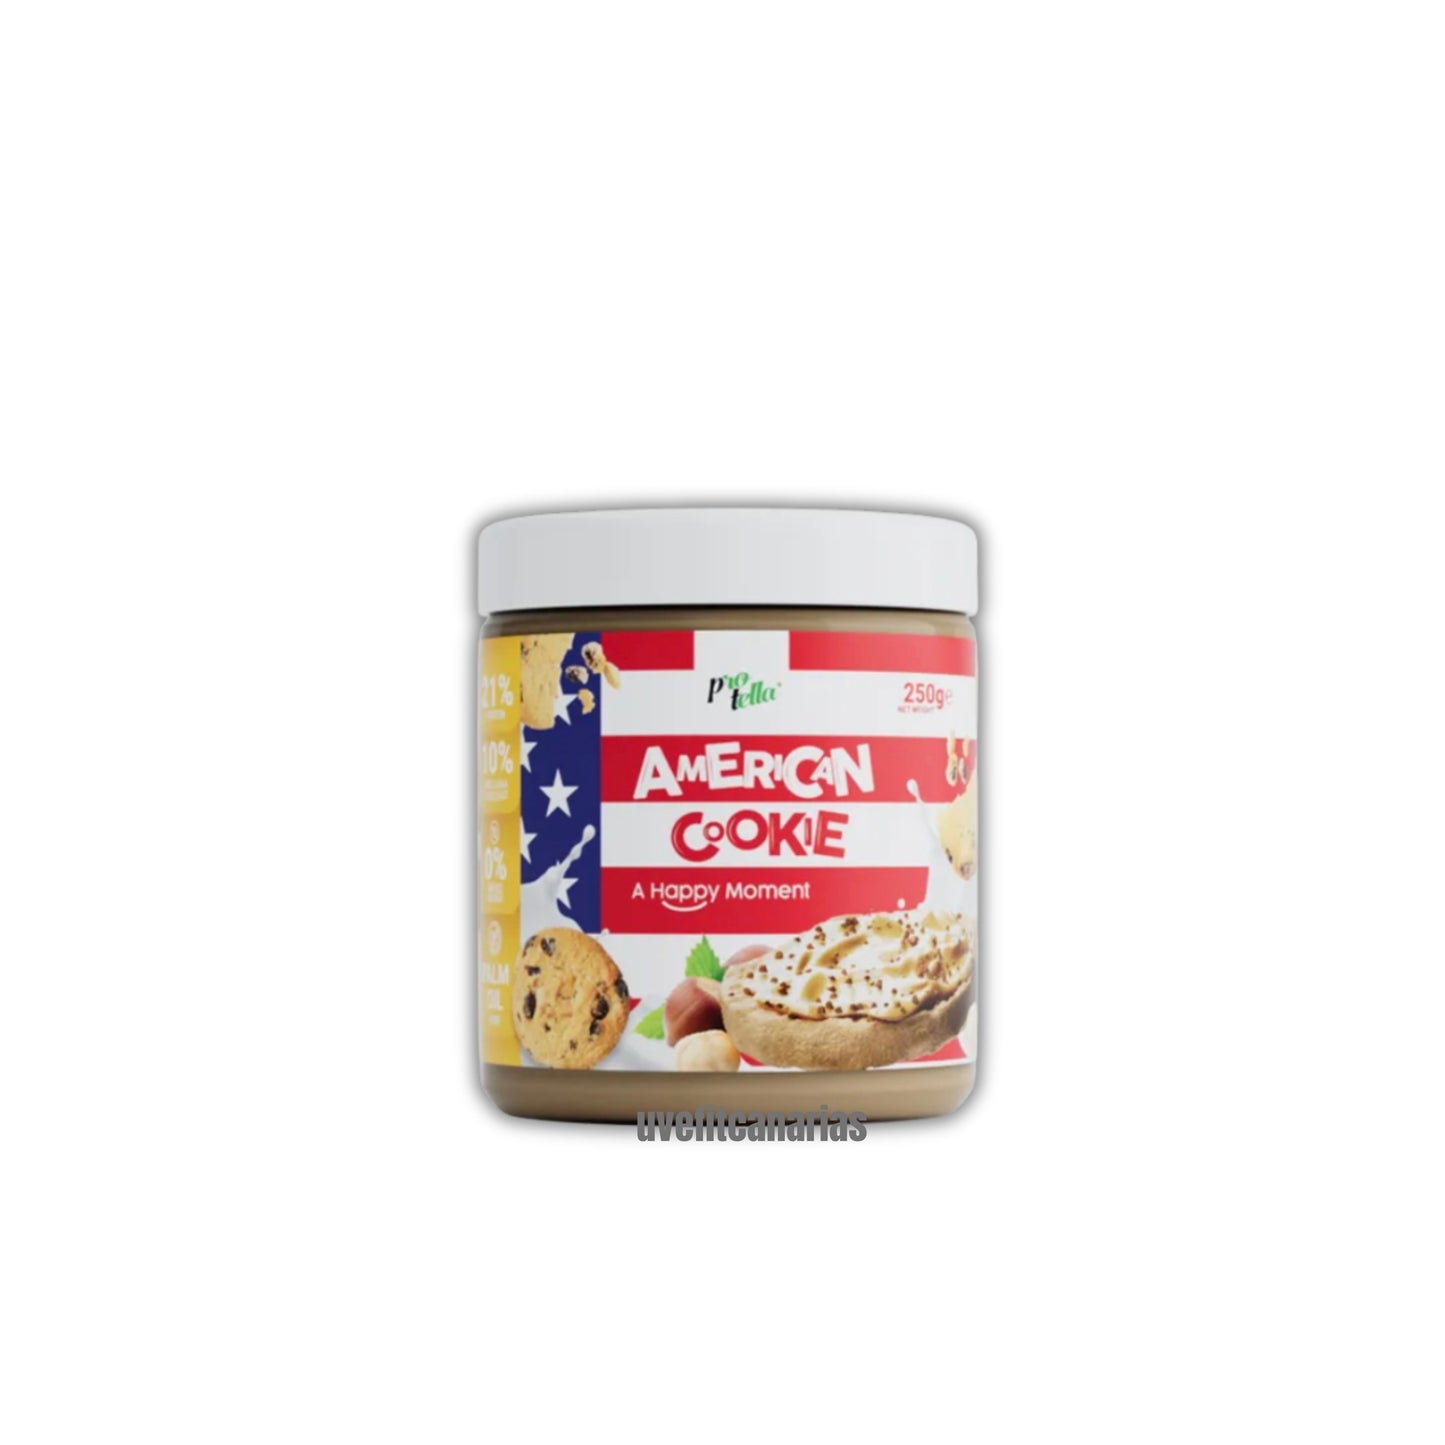 American Cookie Cream, 250g - Protella